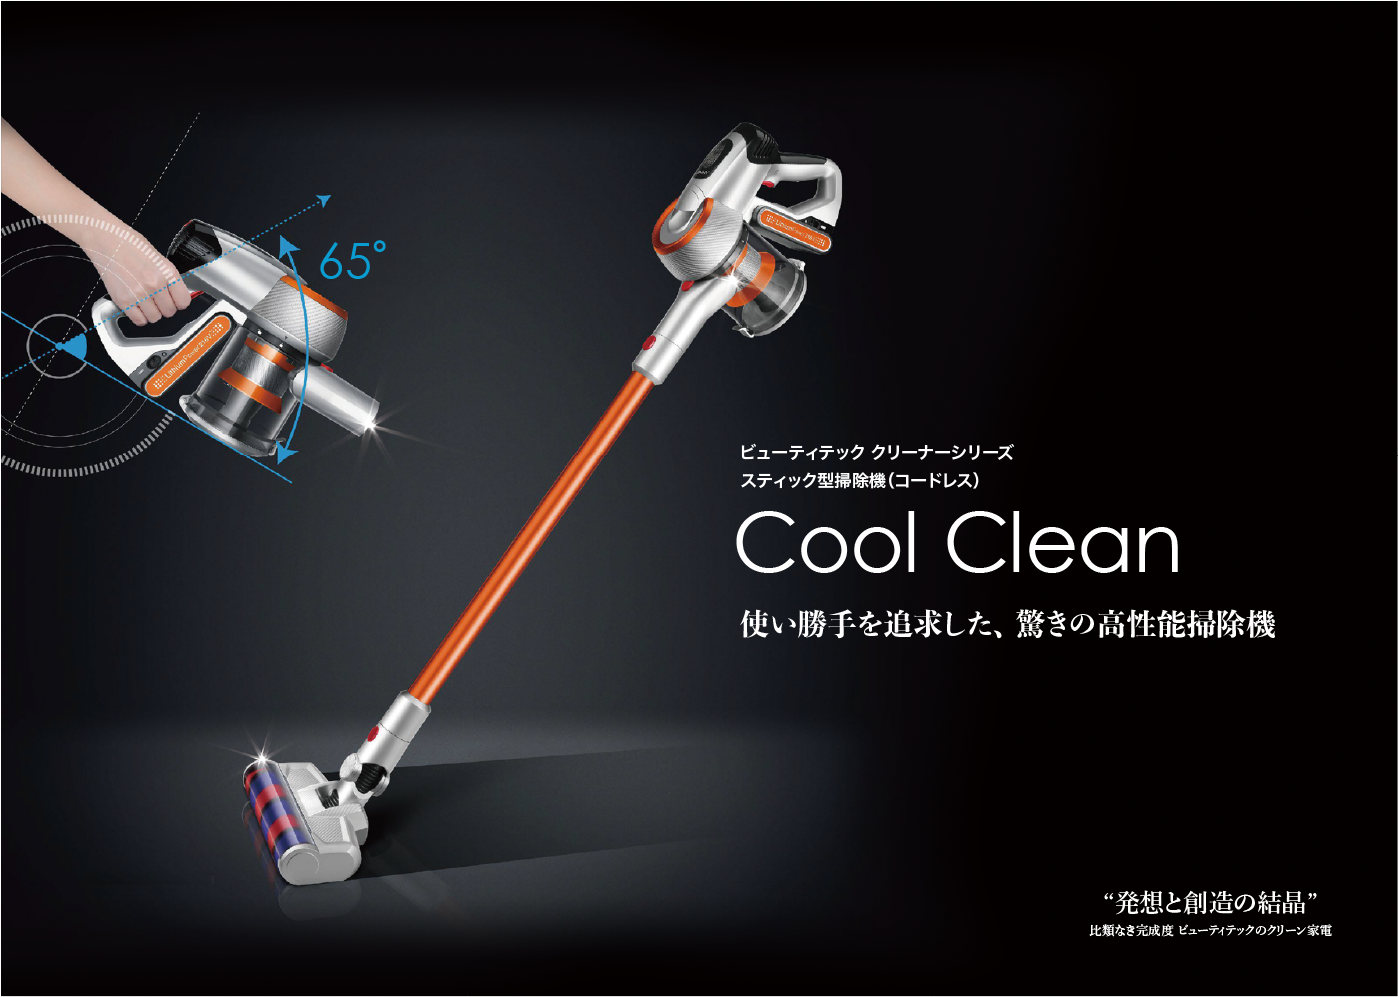 ビューティテック クリーナーシリーズ スティック型掃除機（コードレス）Cool Clean 使い勝手を追求した、 驚きの高性能掃除機 “発想と創造の結晶” 比類なき完成度 ビューティテックのクリーン家電